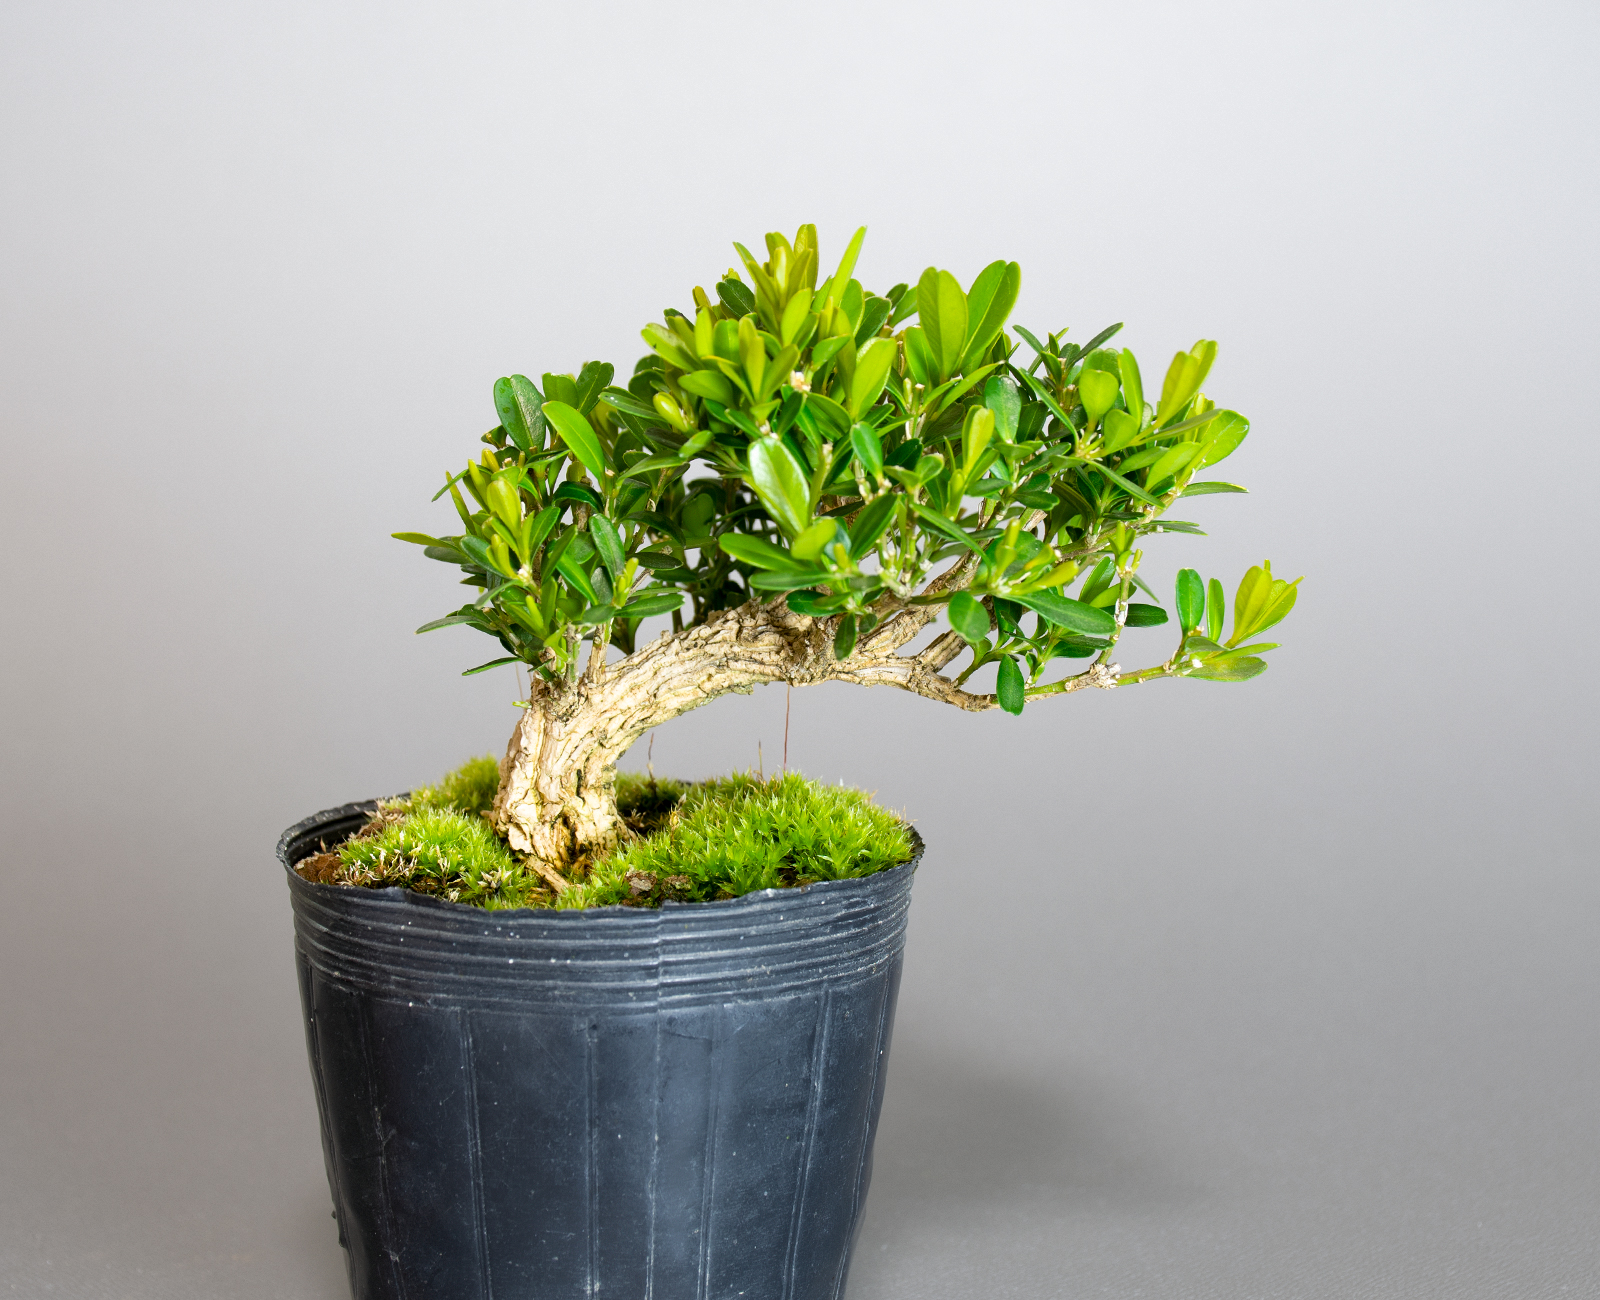 タイワンツゲ-A1（たいわんつげ・台湾黄楊）実もの盆栽の販売と育て方・作り方・Buxus microphylla var.japonica bonsai